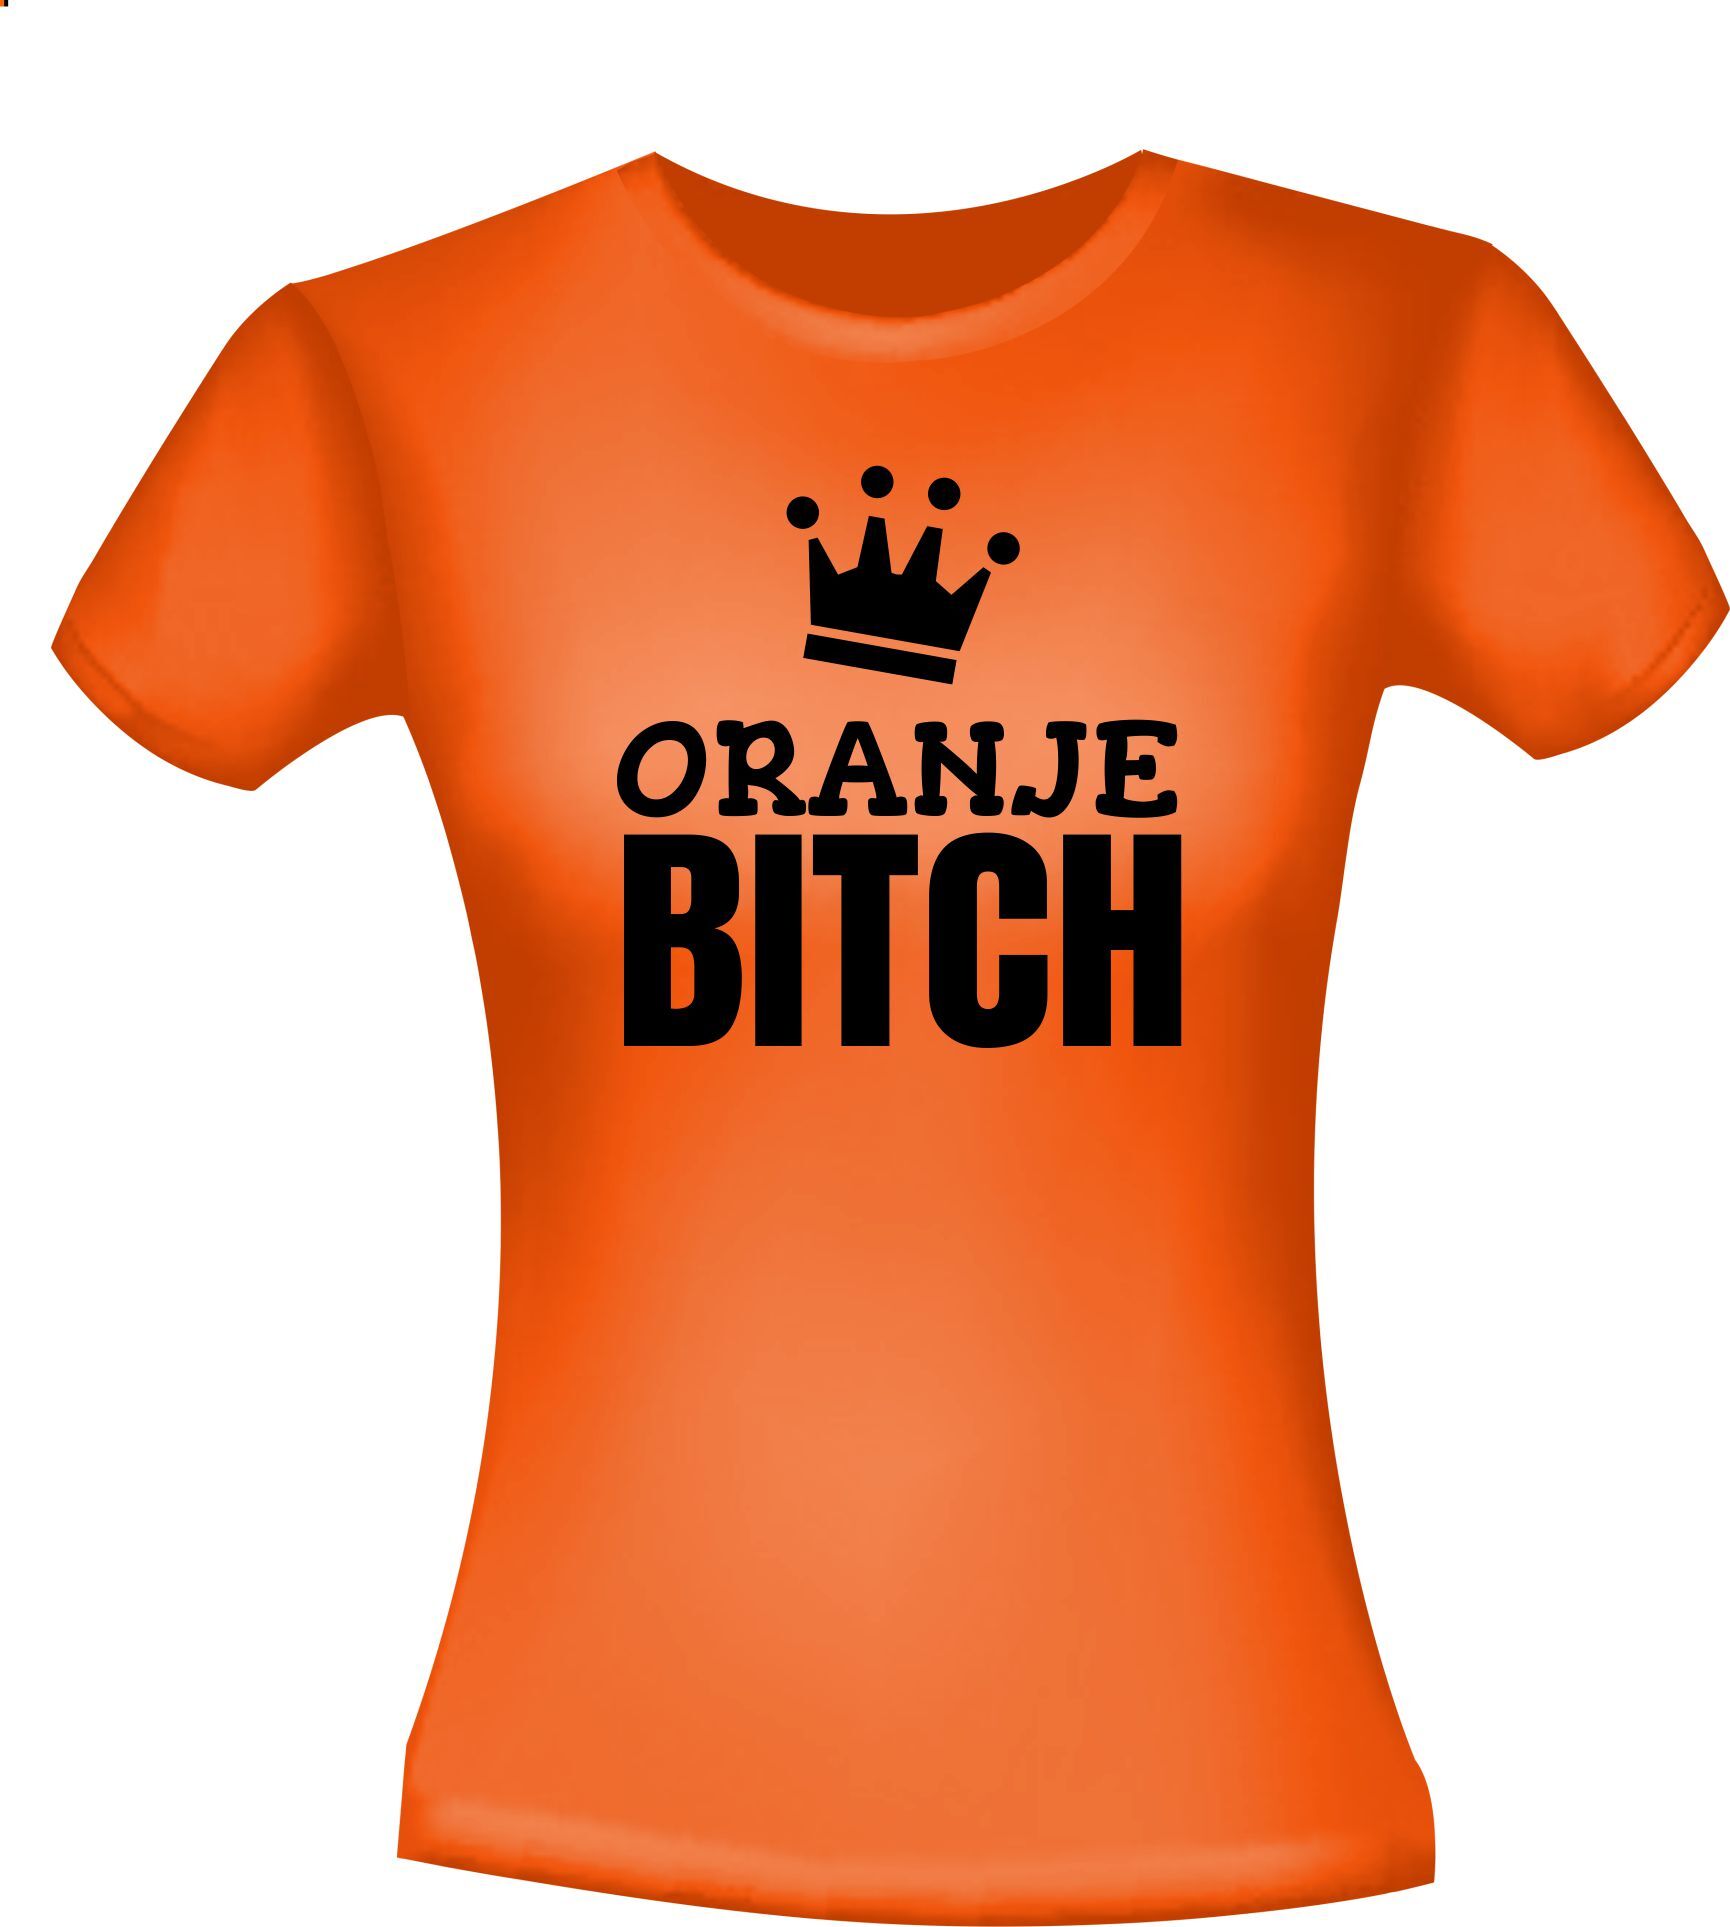 Oranje shirtje voor Koningsdag voor een oranje bitch